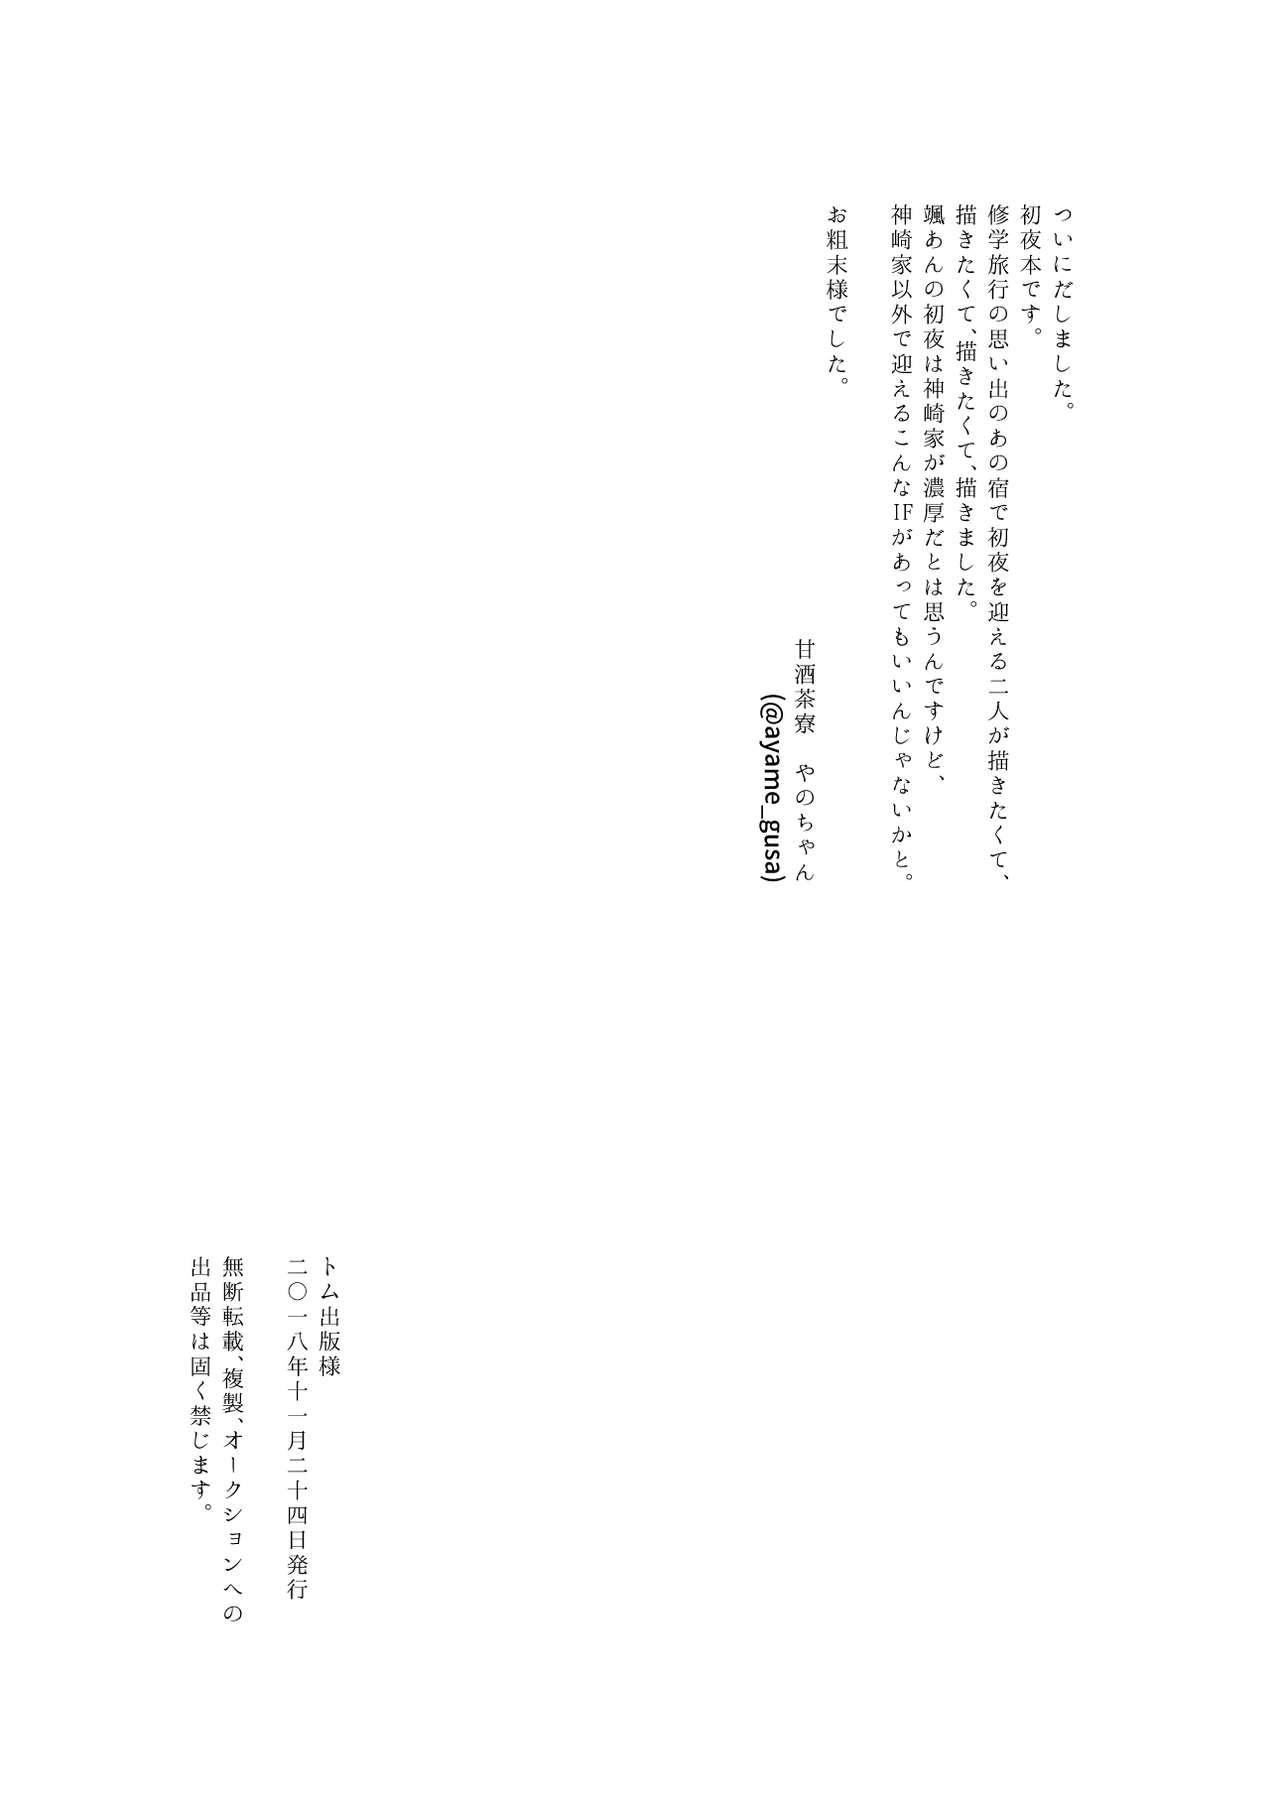 Sensual Kantan no Yume, Saredo Tonari ni Kimi Areba - Ensemble stars Daddy - Page 55